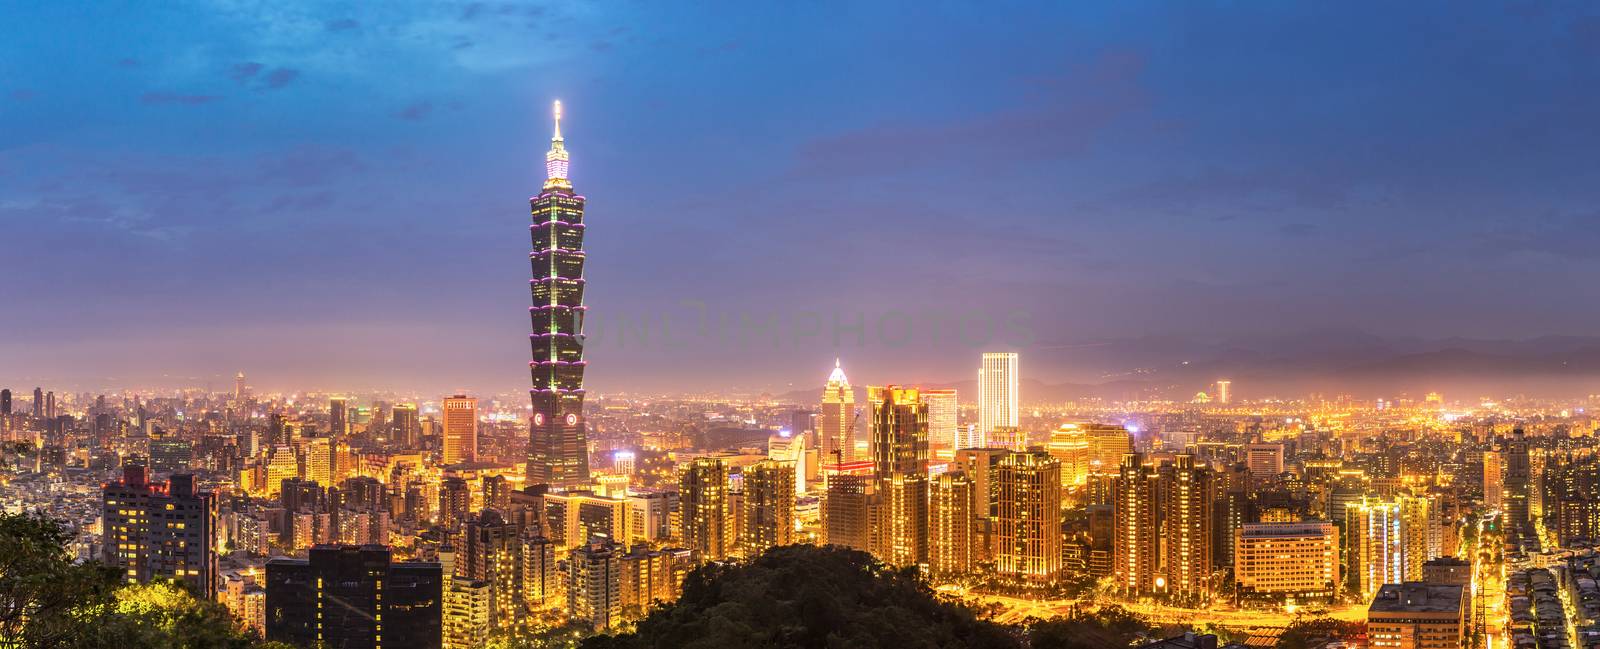 Taipei skyline Panorama by vichie81